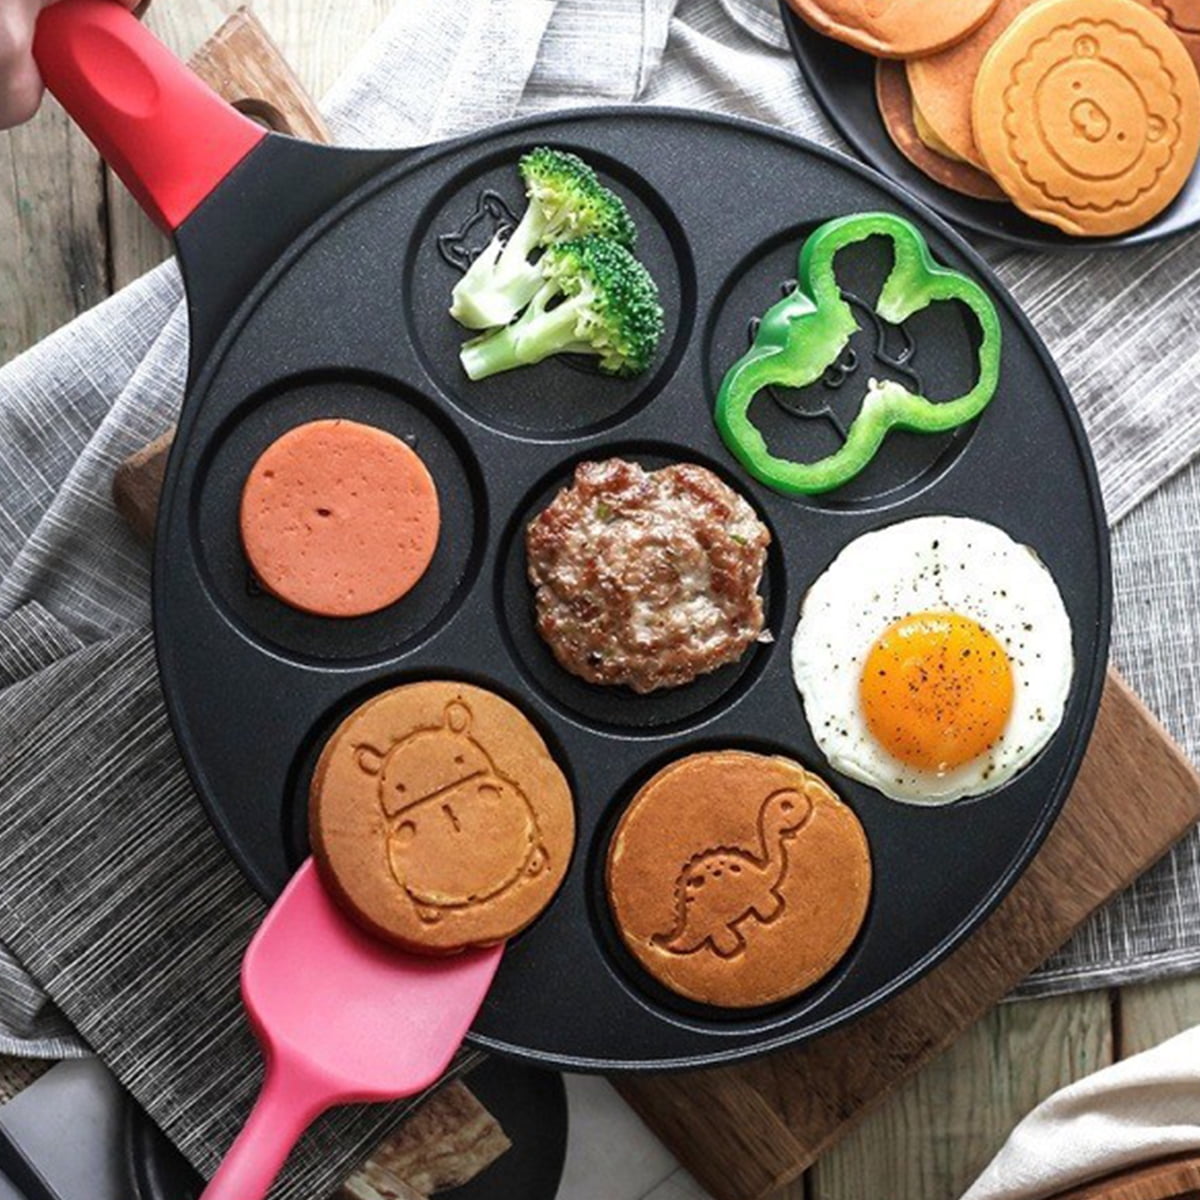 Bobikuke Pancake Pan Induction for Kids, Pancake Shapes Pan, Mini Pancakes  Maker Nonstick Pancake Griddle 7 Holes Smiley Face Pancake Mold for